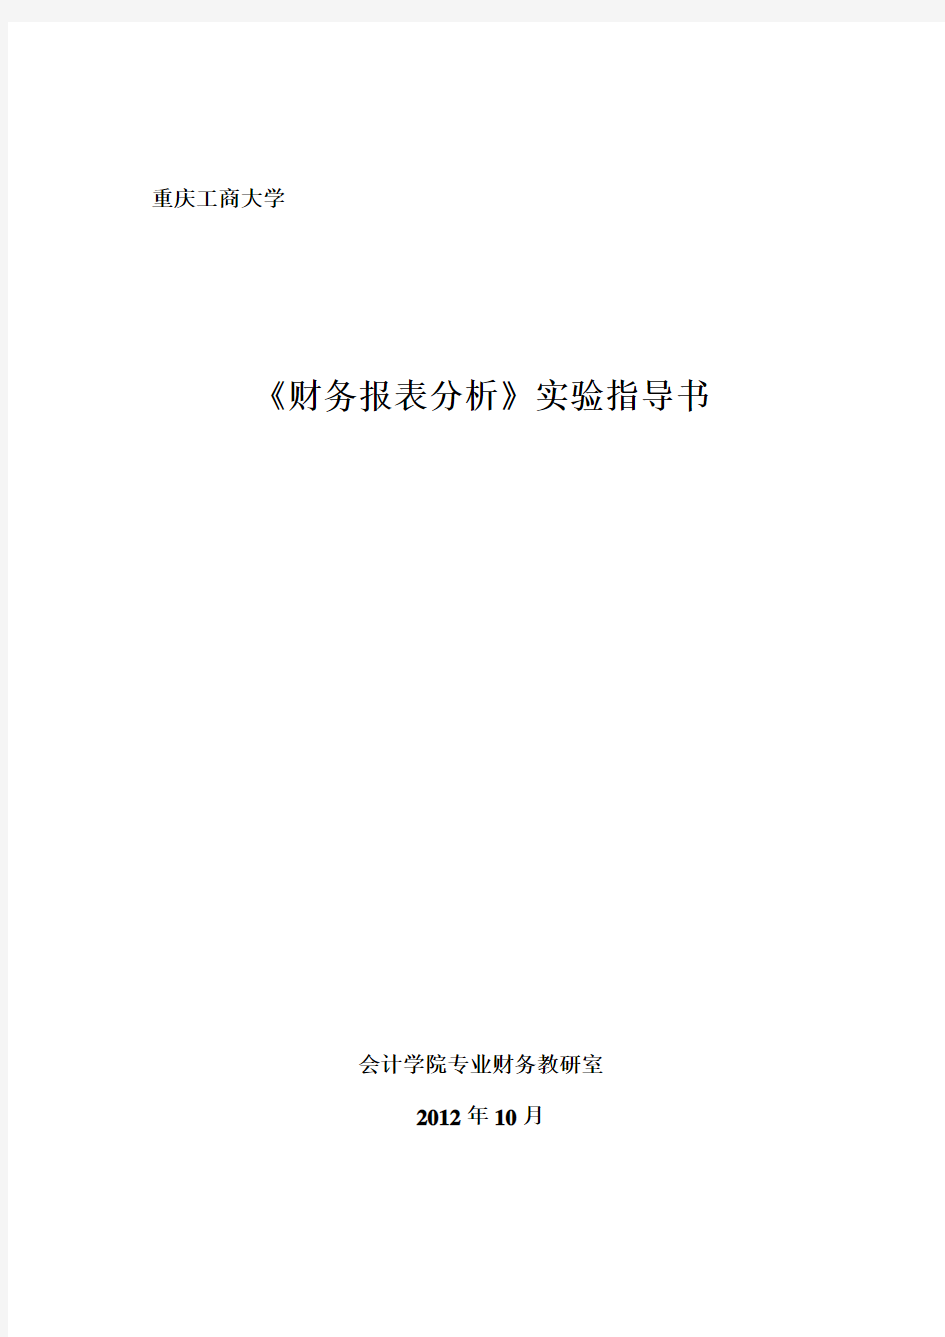 重庆工商大学财务报表分析实验指导书